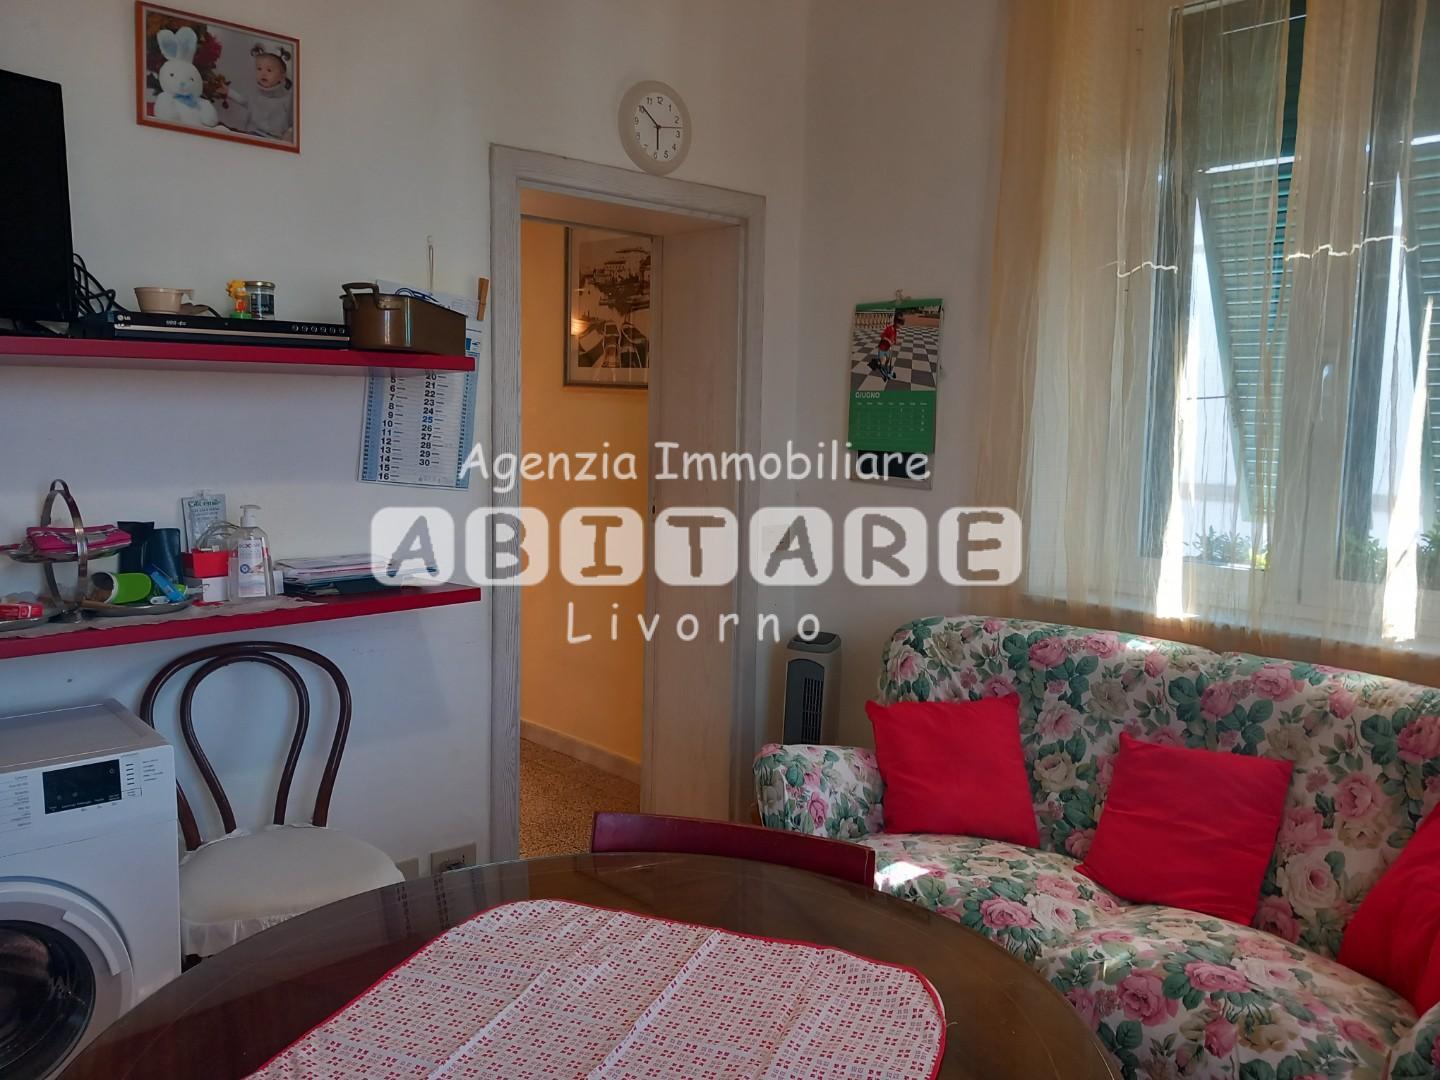 Appartamento in vendita a Livorno, 5 locali, prezzo € 225.000 | PortaleAgenzieImmobiliari.it